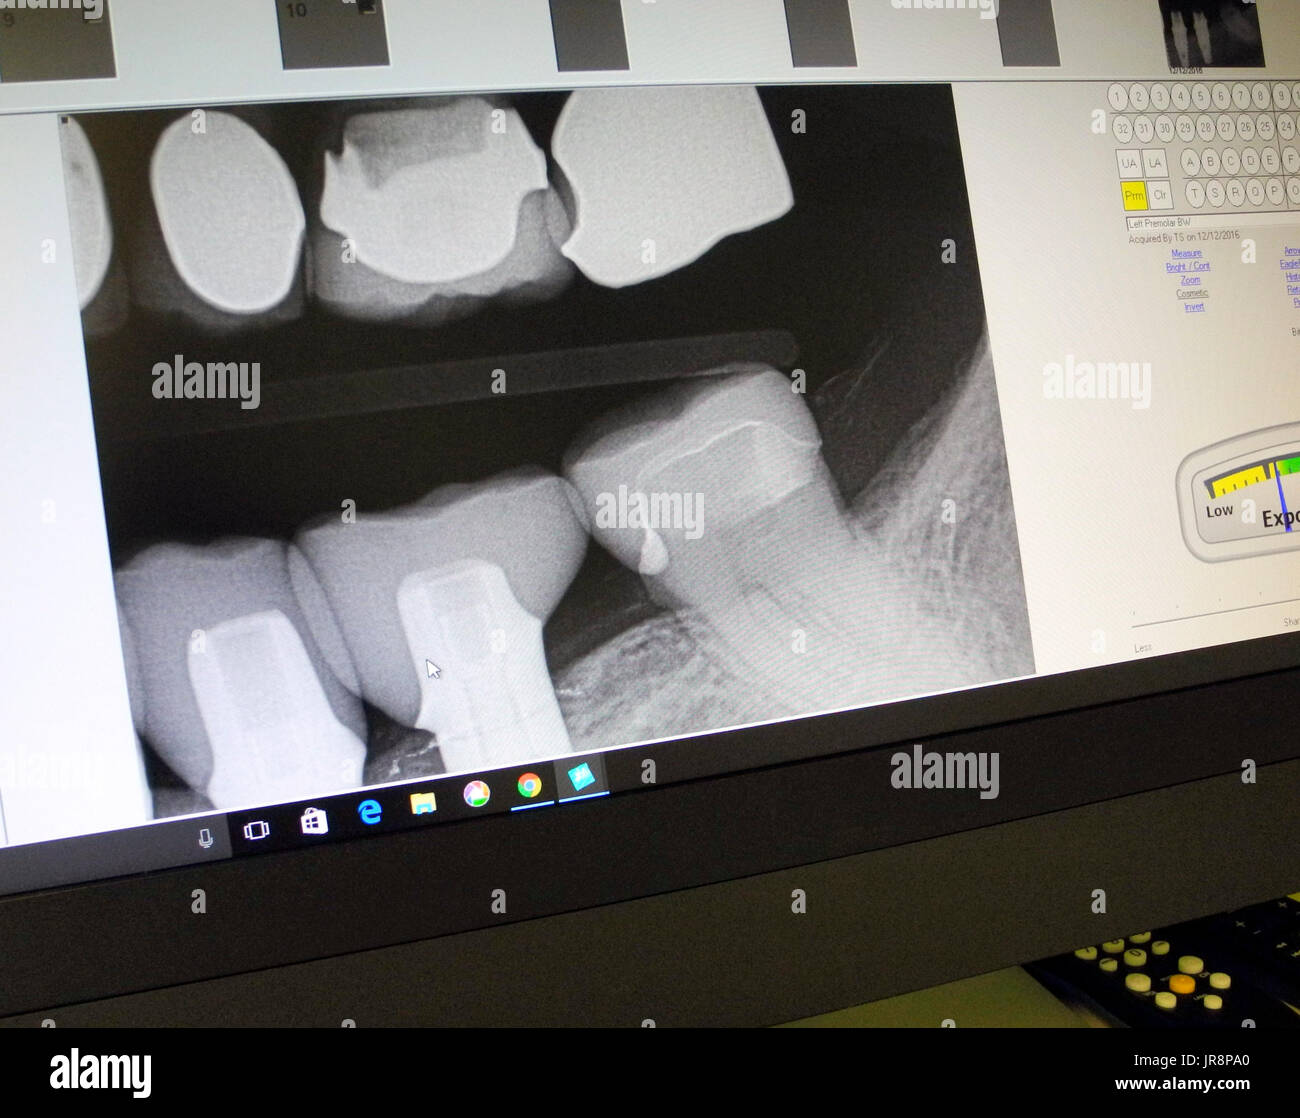 Visto su un monitor di computer schermo è un dentista digitale a raggi X che mostra le varie otturazioni dentali sulla parte superiore dei denti, e tre nuove corone di porcellana su due impianto dentale posti (sinistra) e uno su un dente naturale (a destra) sulla ganascia inferiore. Foto Stock